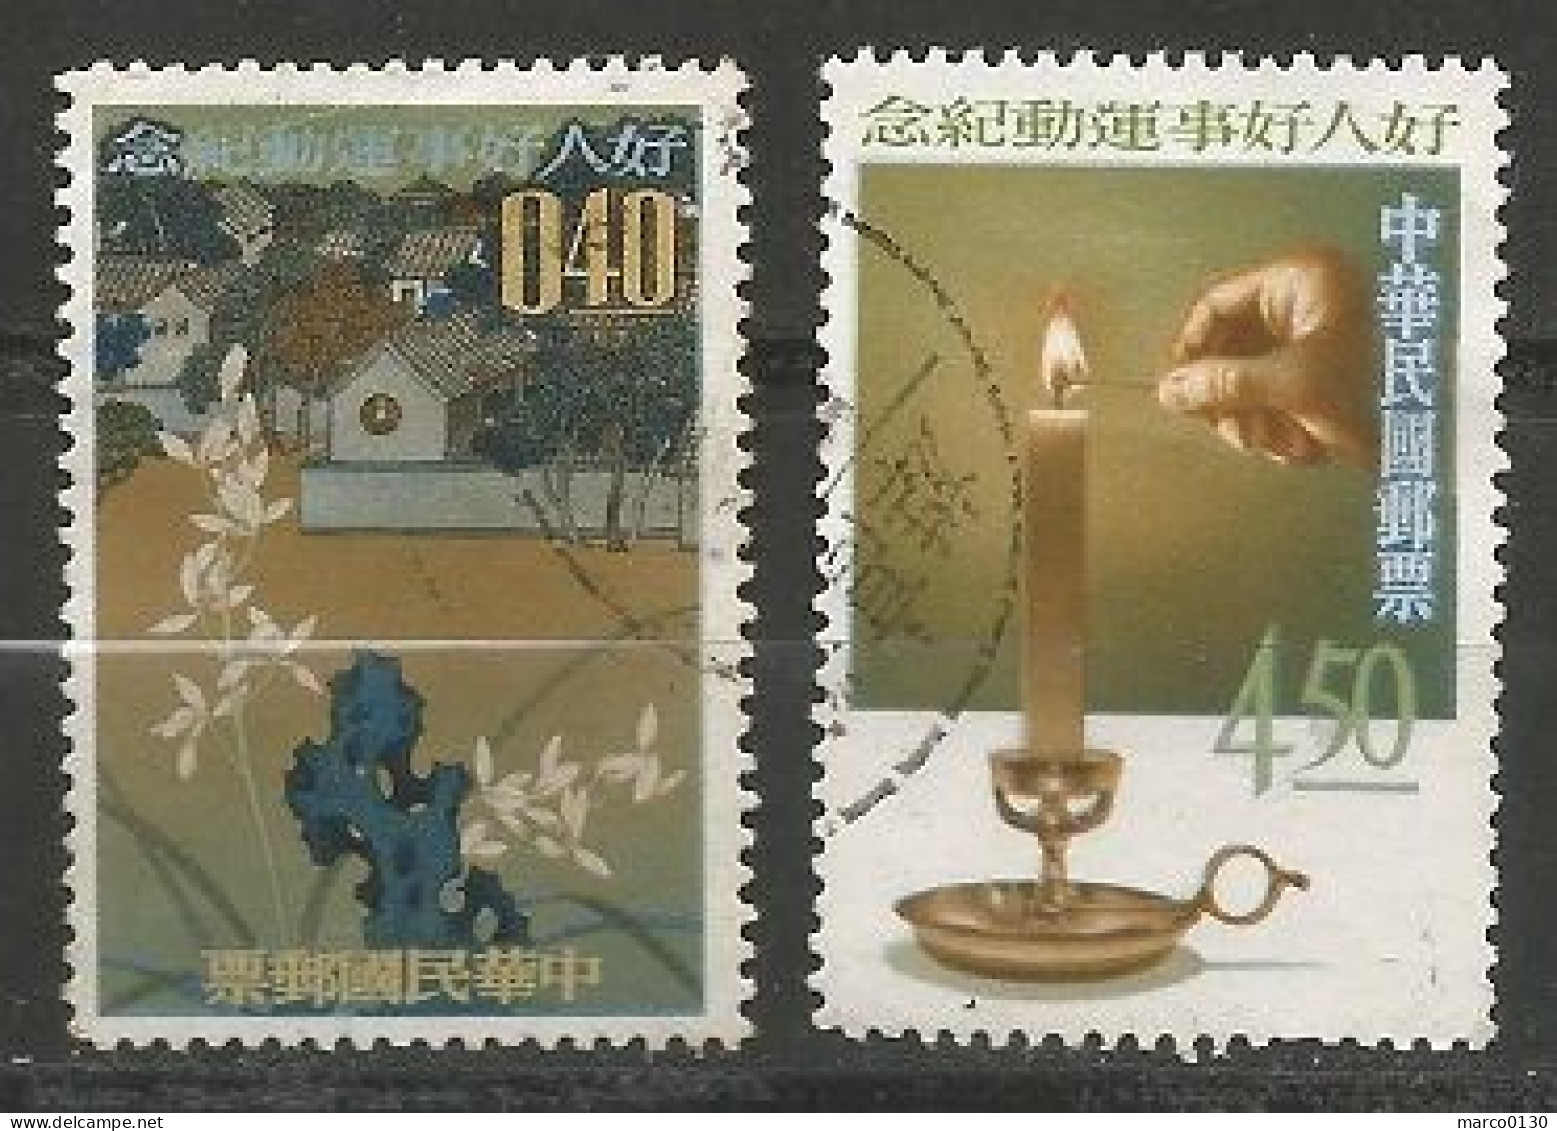 FORMOSE (TAIWAN) N° 450 + N° 451 OBLITERE - Used Stamps